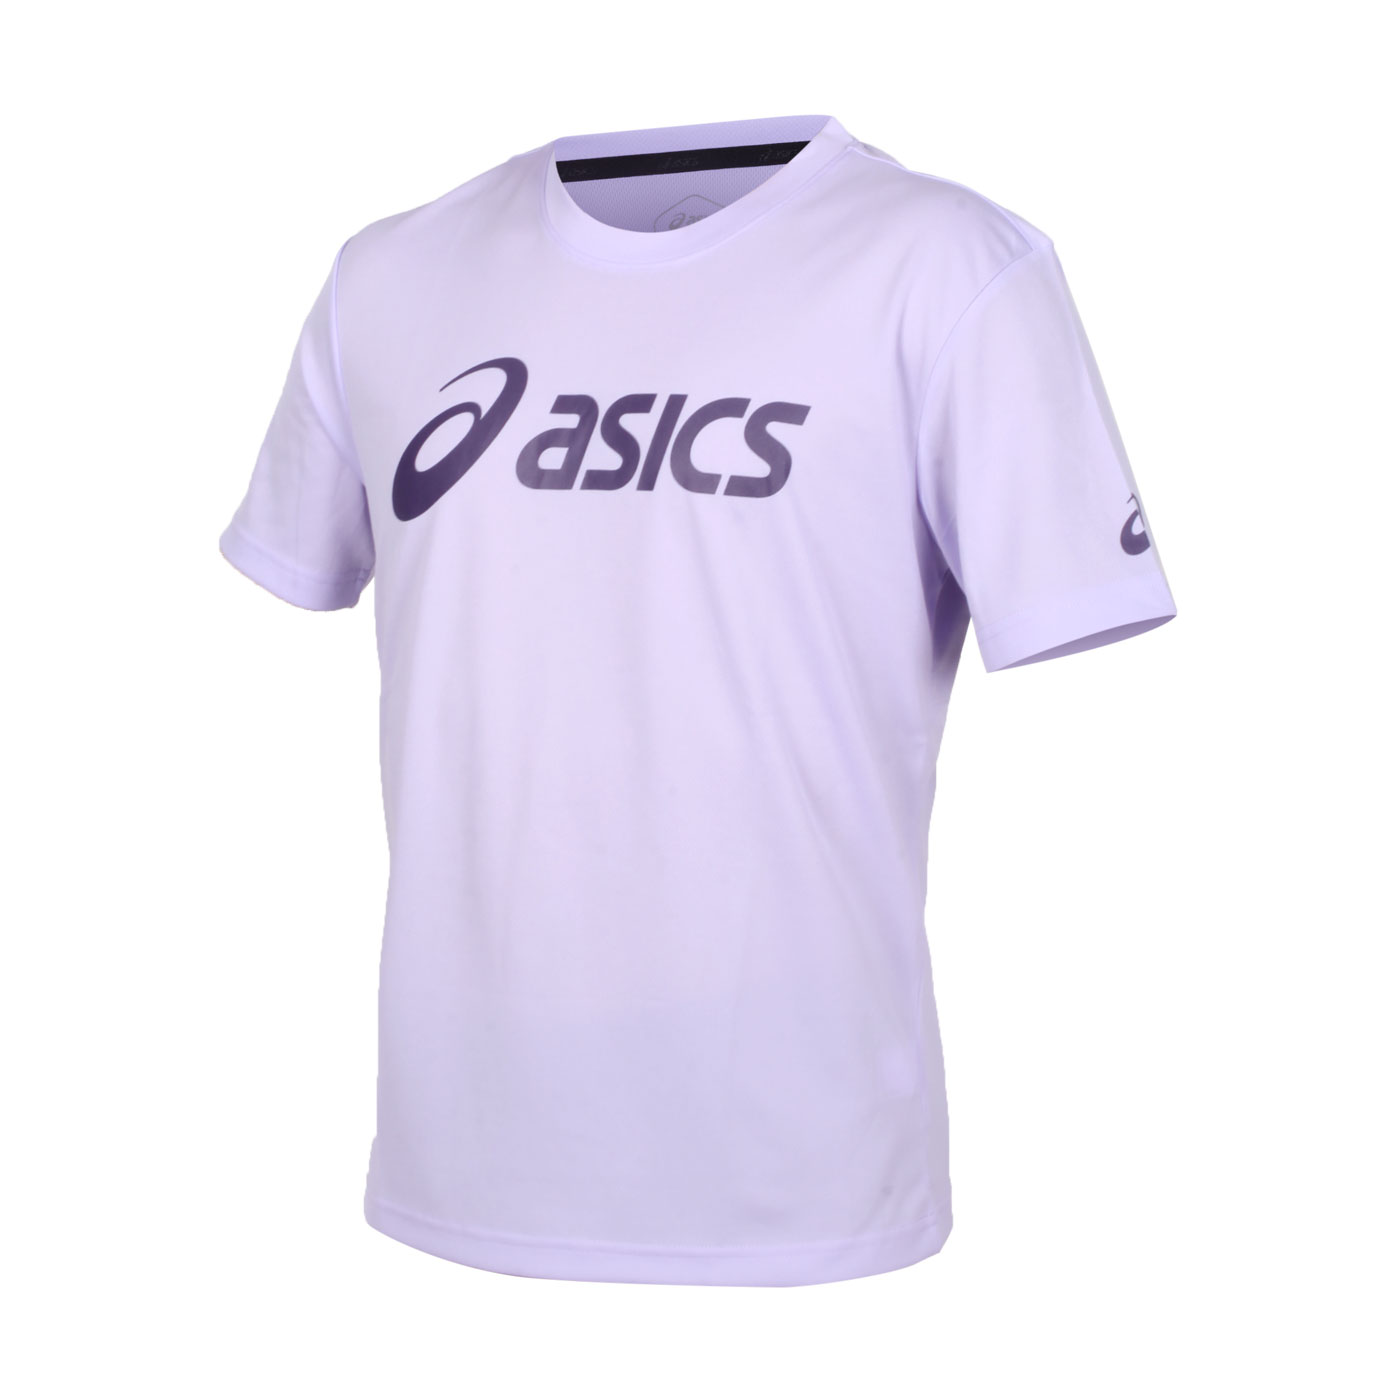 ASICS 短袖T恤  2033B666-500 - 馬卡龍紫